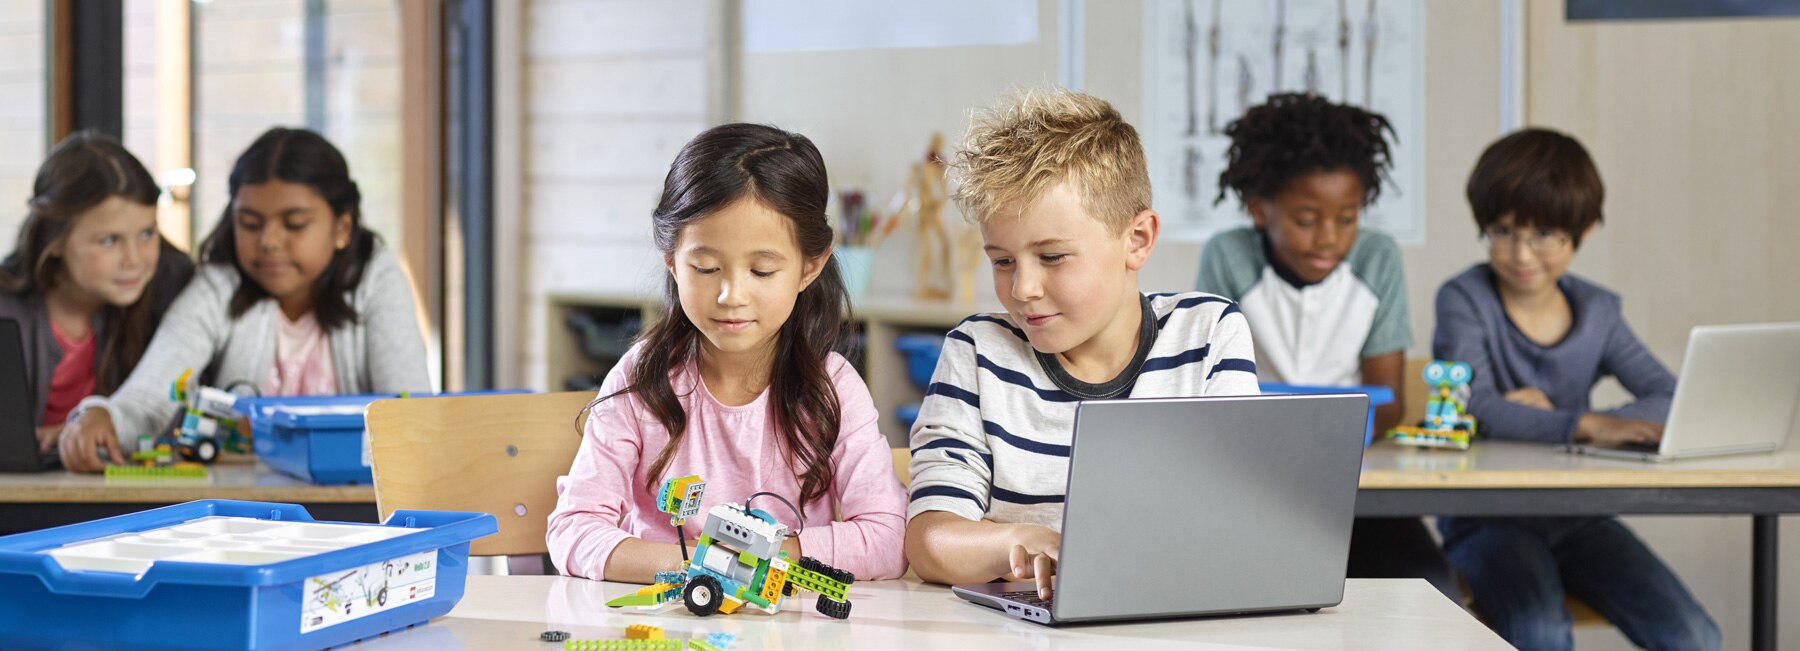 LEGO Education teach STEM through playful learning experiences